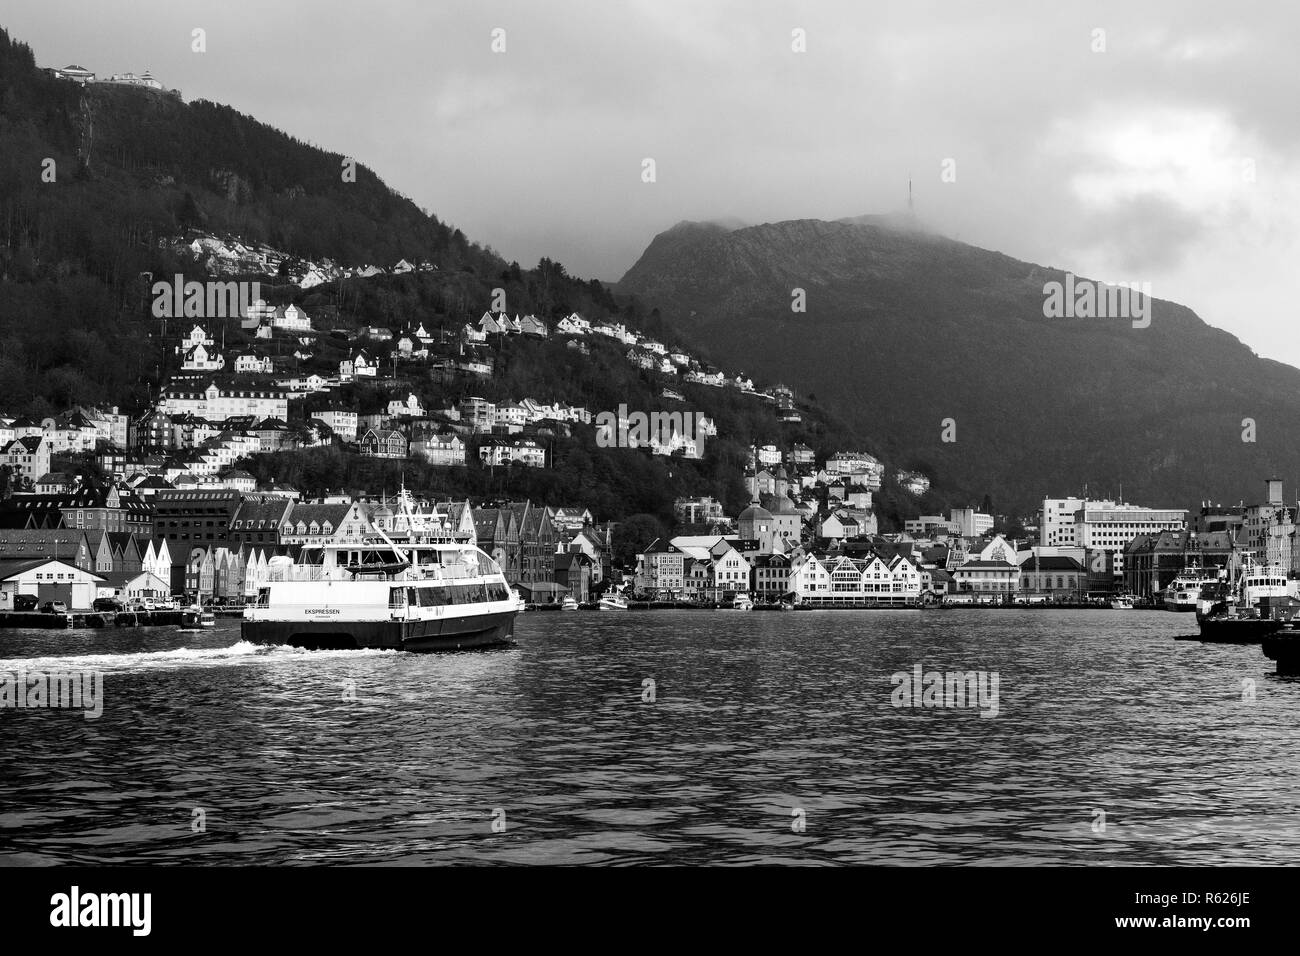 Catamarán de alta velocidad para pasajeros que lleguen Ekspressen m del puerto de Bergen, Noruega. Foto de stock